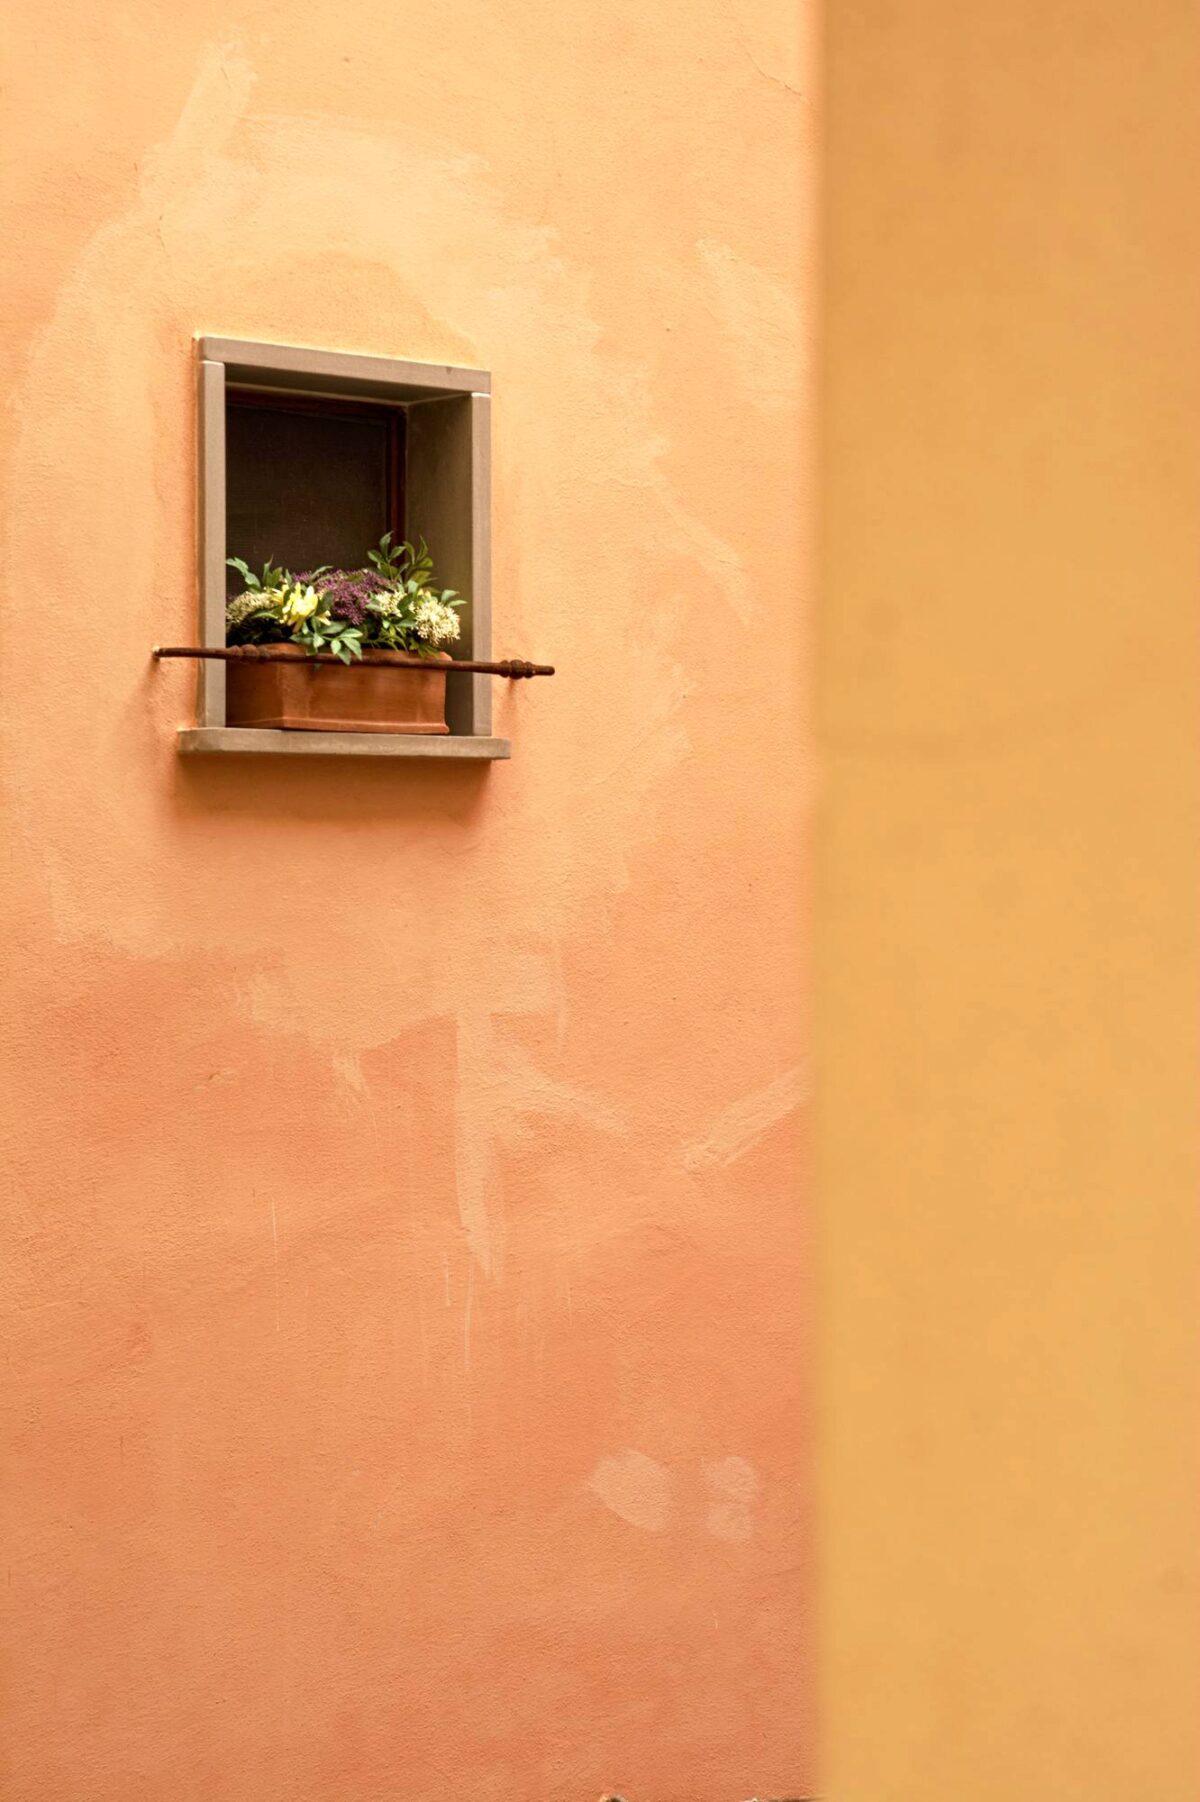 Una piccola finestra ornata con un vaso di fiori rompe la regolarità delle pareti colorate